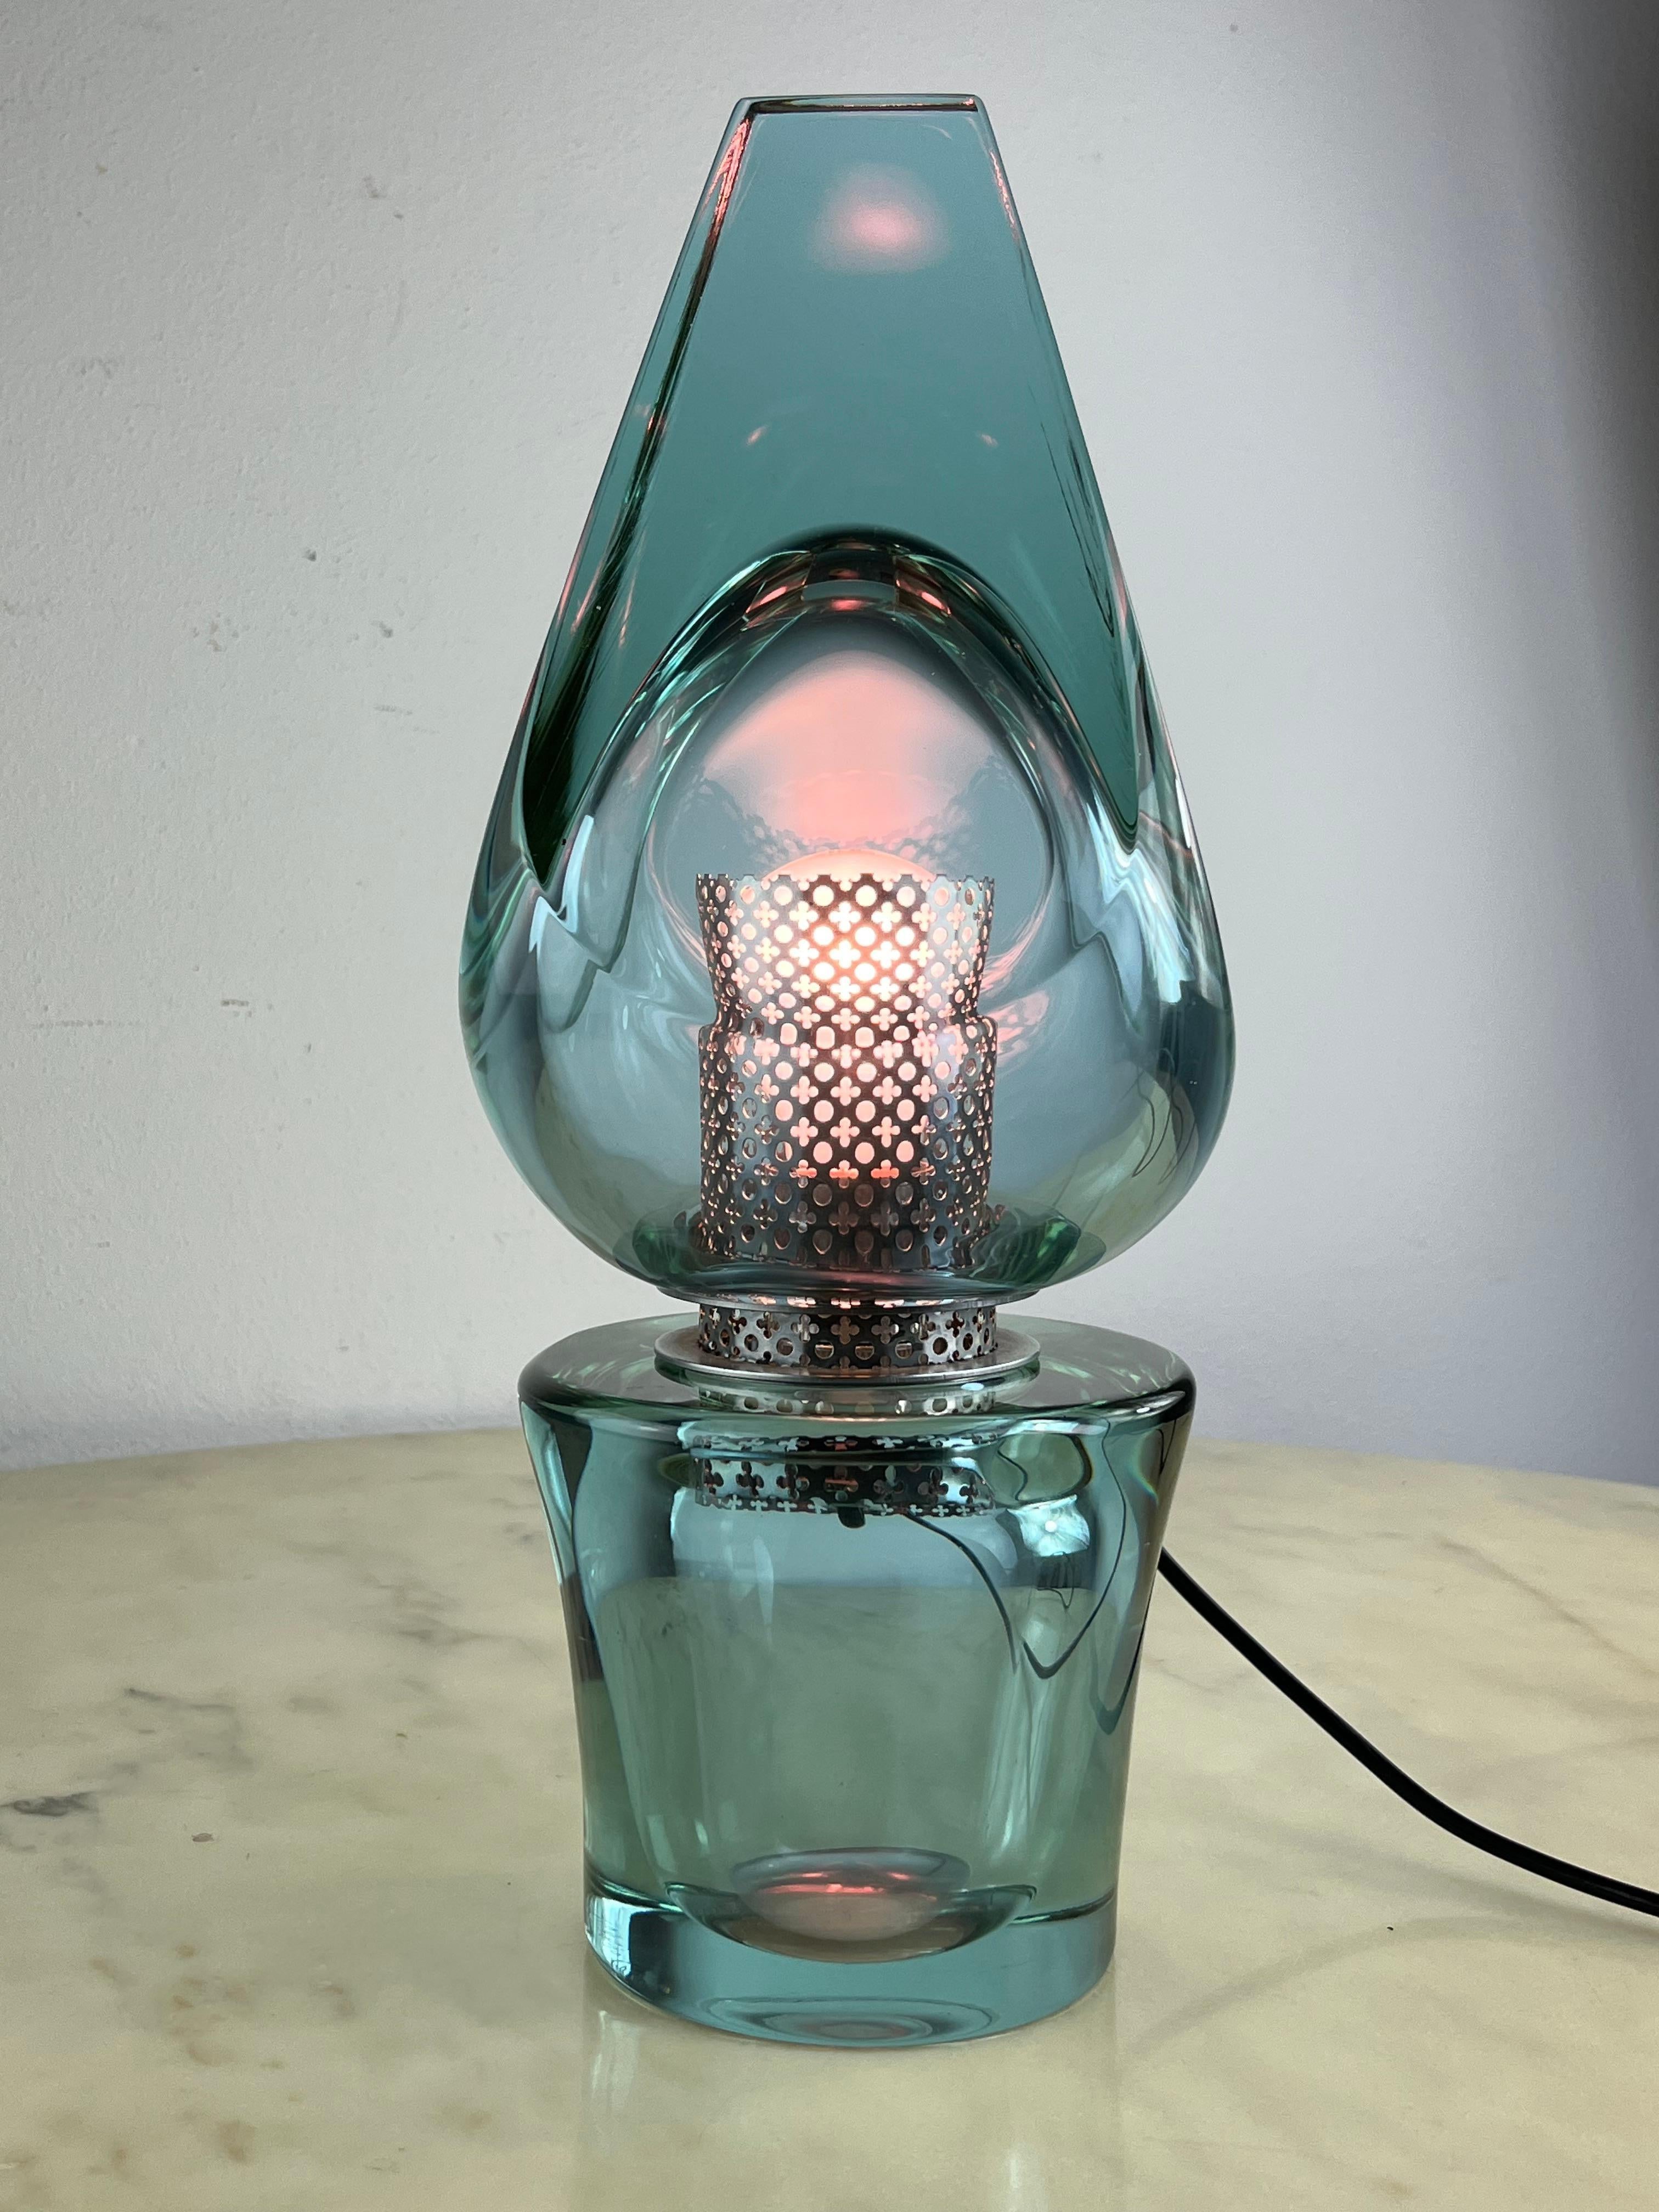 Nilgrüne Murano-Glas-Tischlampe aus der Jahrhundertmitte, Seguso 1972 zugeschrieben
Intakt und funktionstüchtig, E27-Lampe
Hergestellt 1972 von der venezianischen Glasmanufaktur Navagero für Seguso, wie auf der Unterseite des Sockels